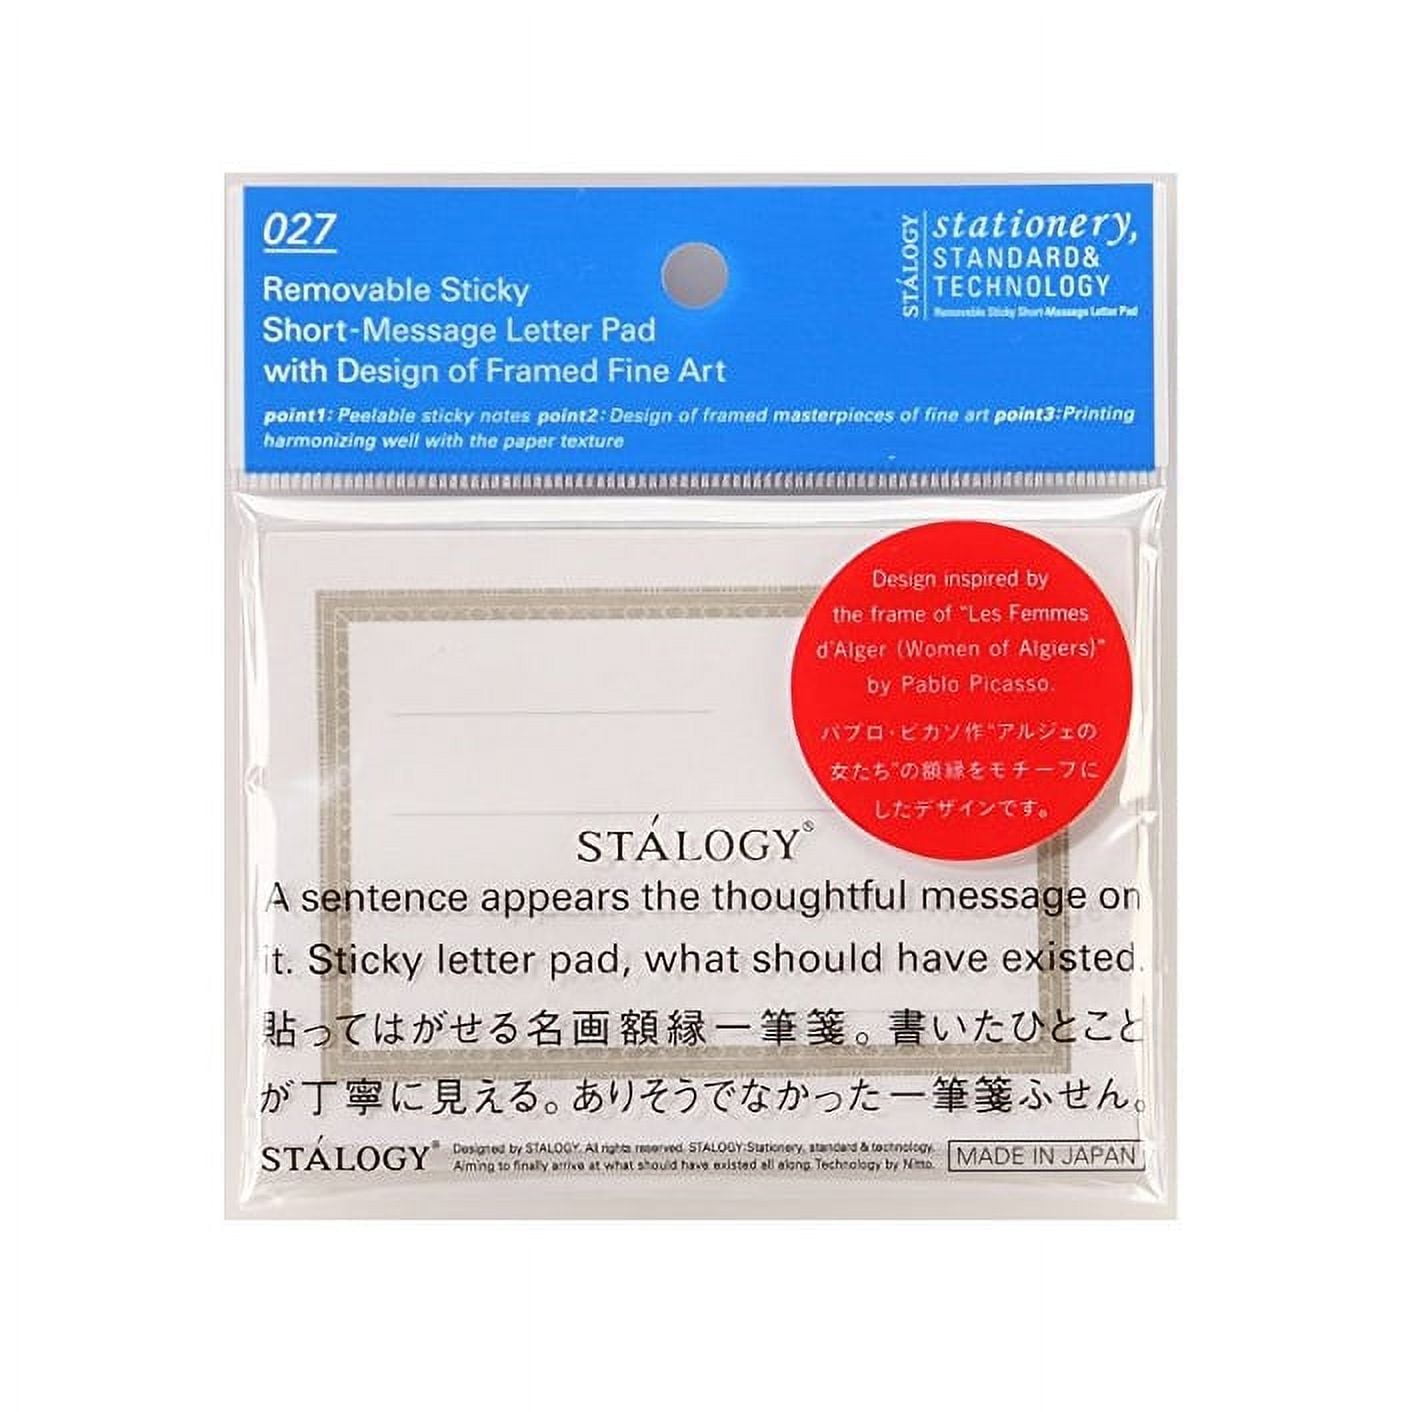 Stalogy Large Translucent Sticky Notes S3033